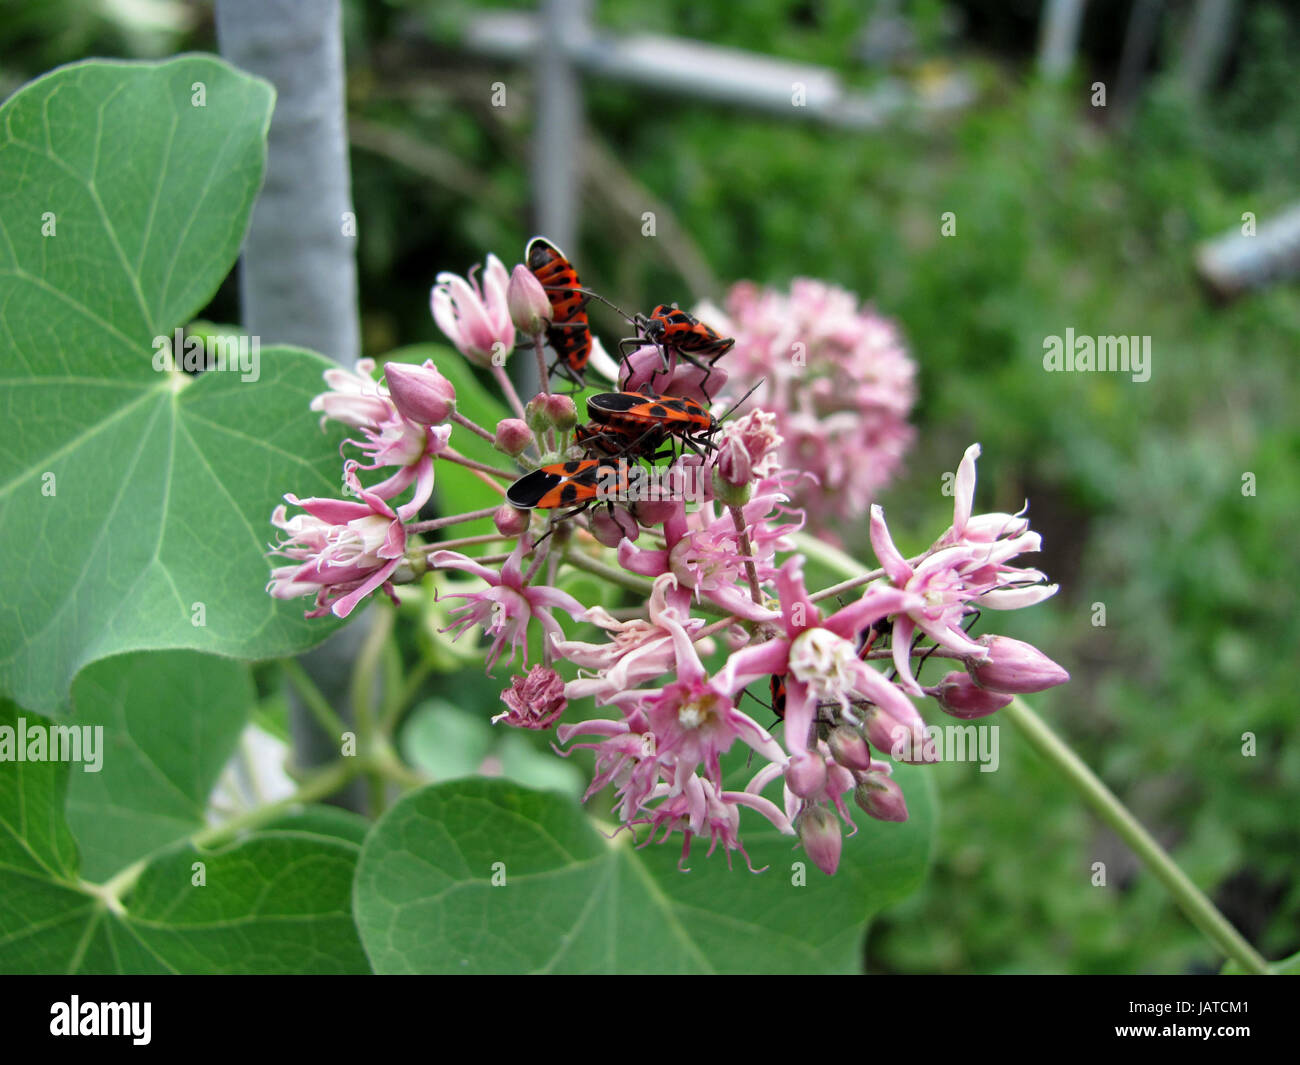 The firebug, Pyrrhocoris apterus on flower Stock Photo